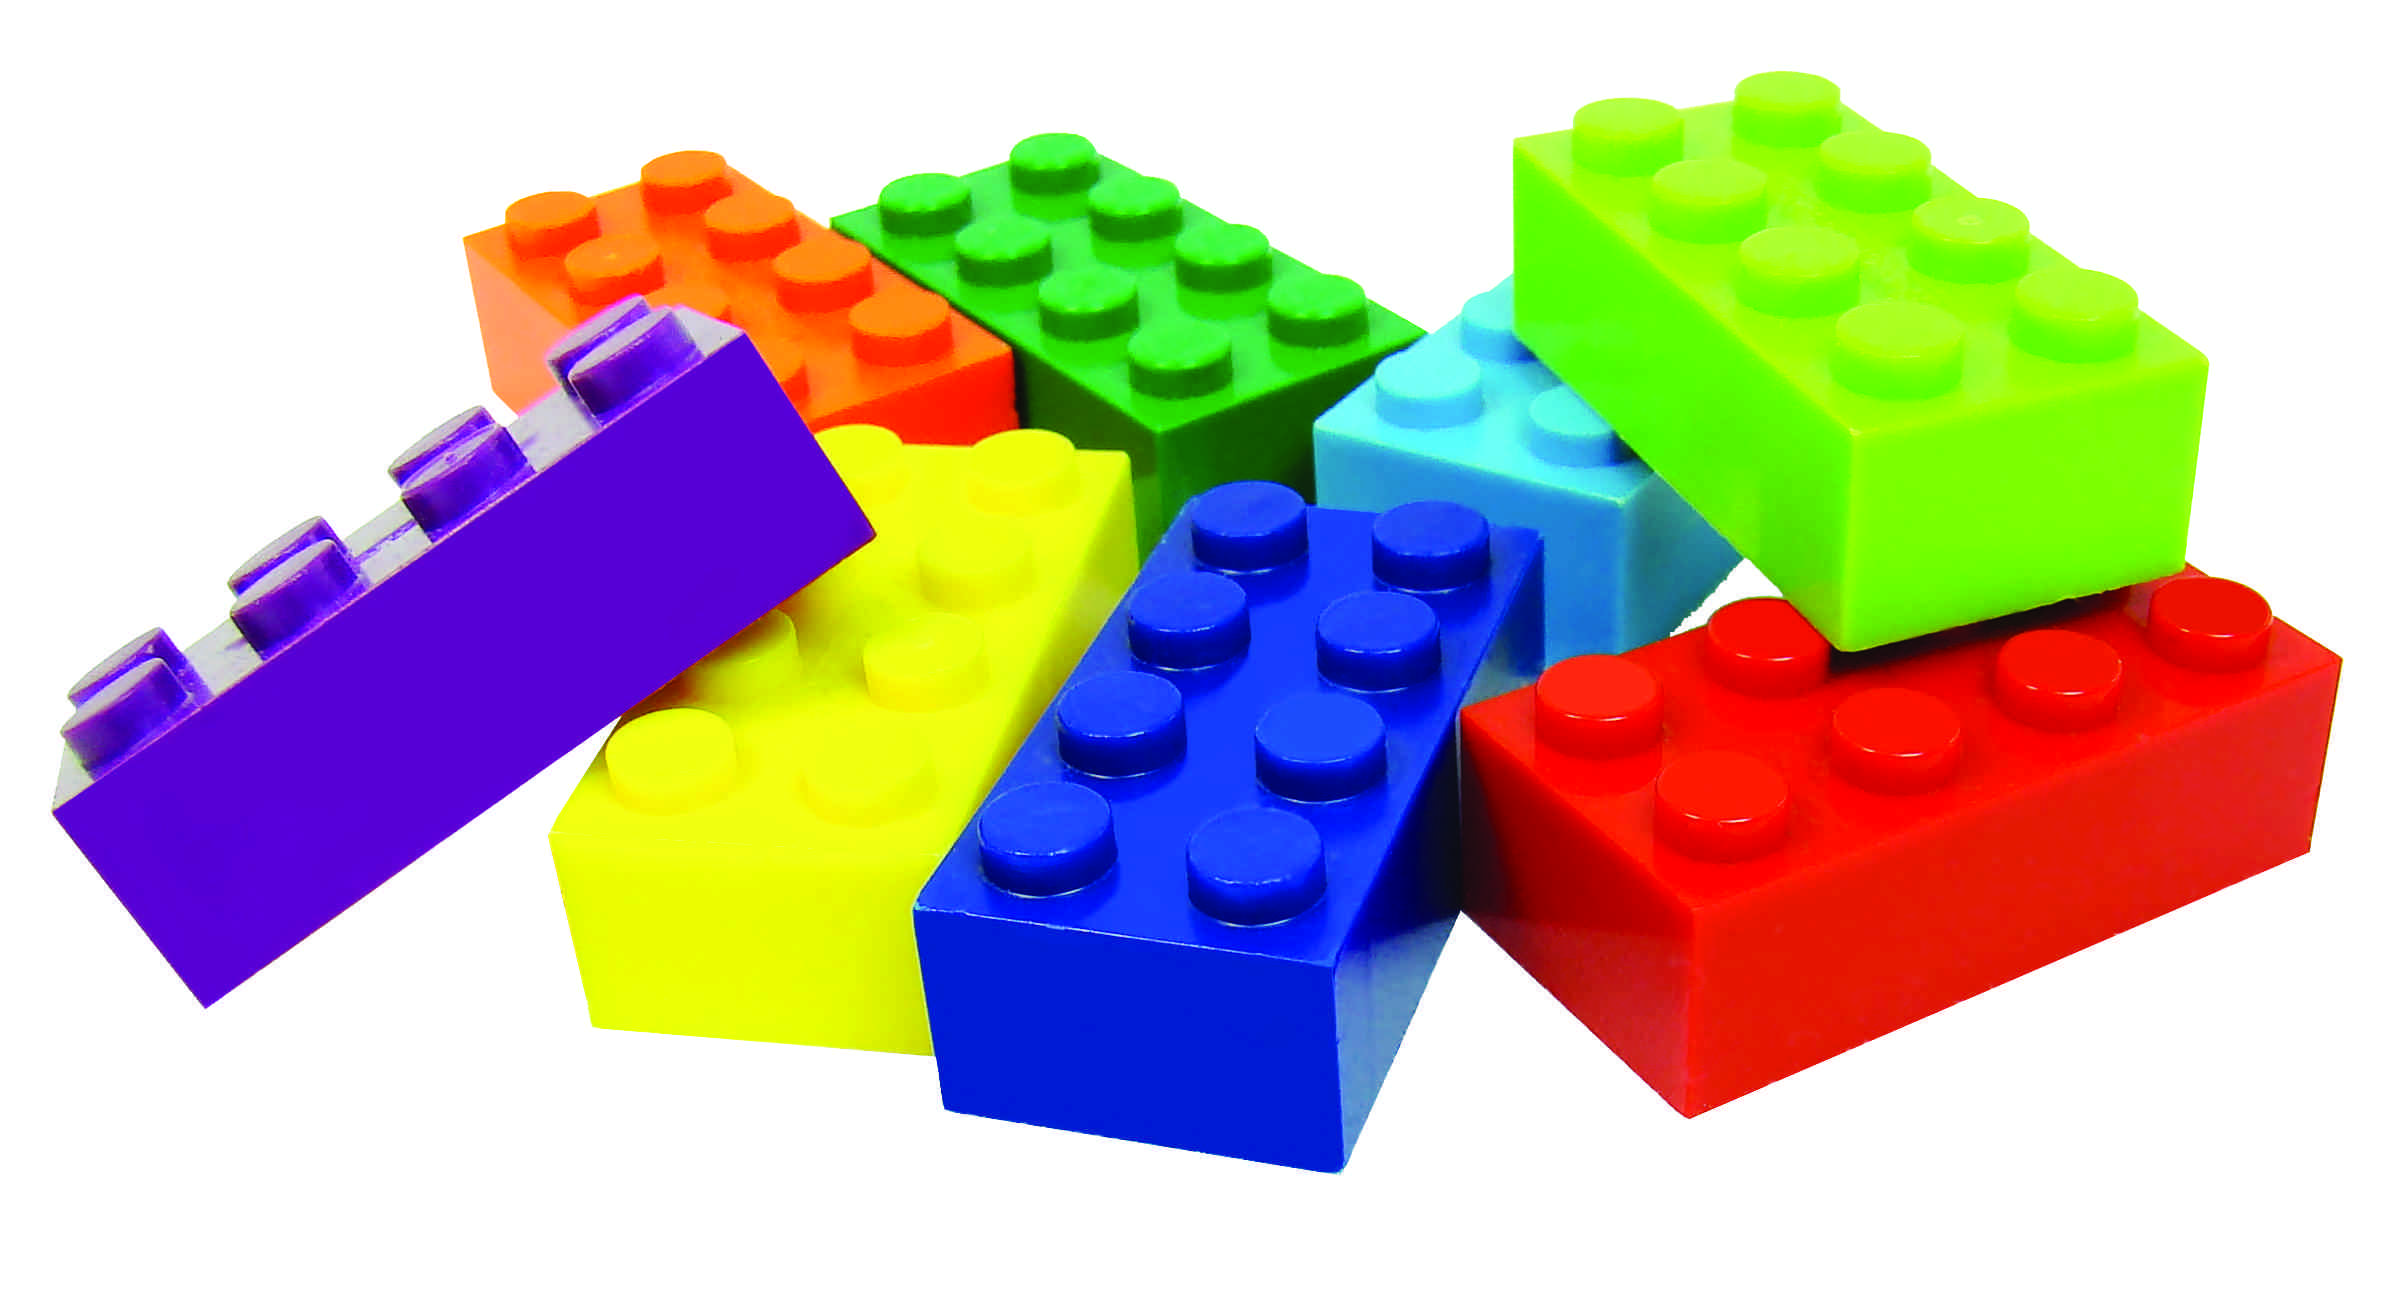 Lego Bricks Clipart Lego bricks clipart lego brick